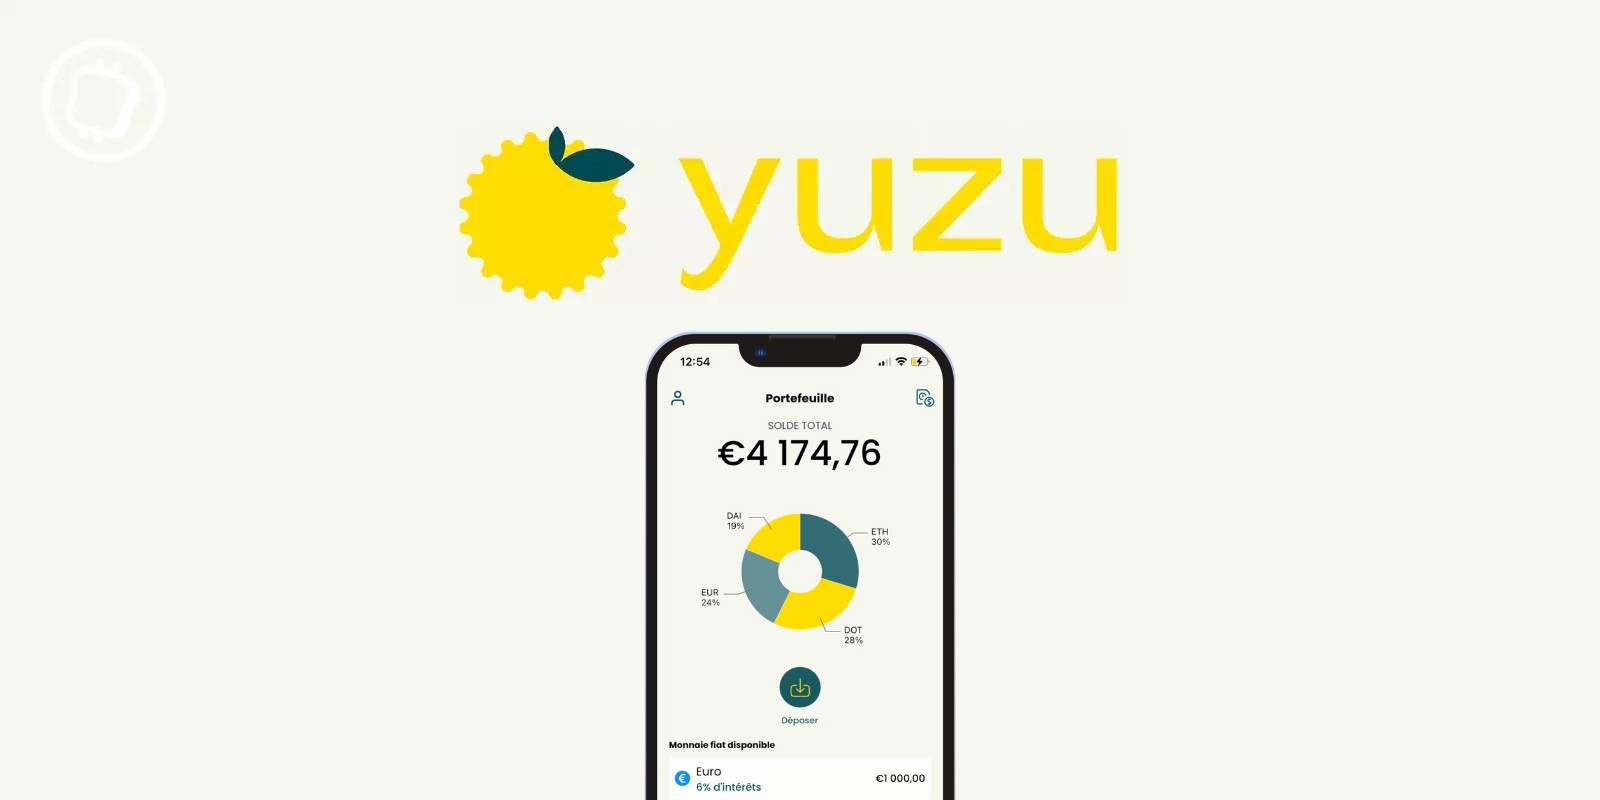 yuzu : épargnez jusqu’à 6 % de façon transparente et durable